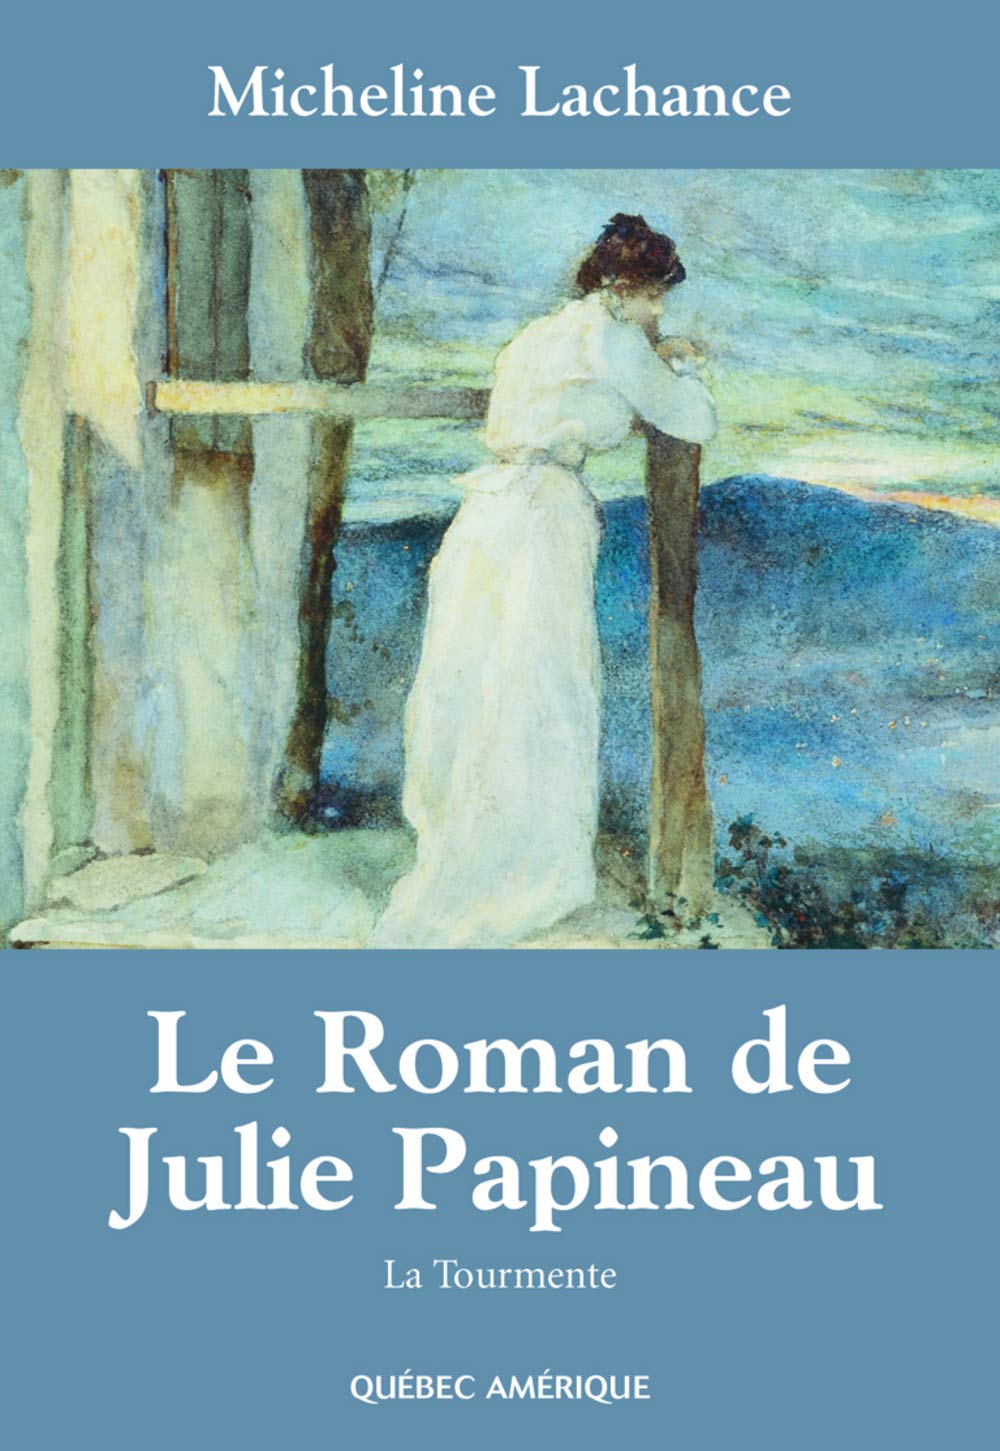 Le roman de Julie Papineau # 1 : La tourmente - Micheline Lachance